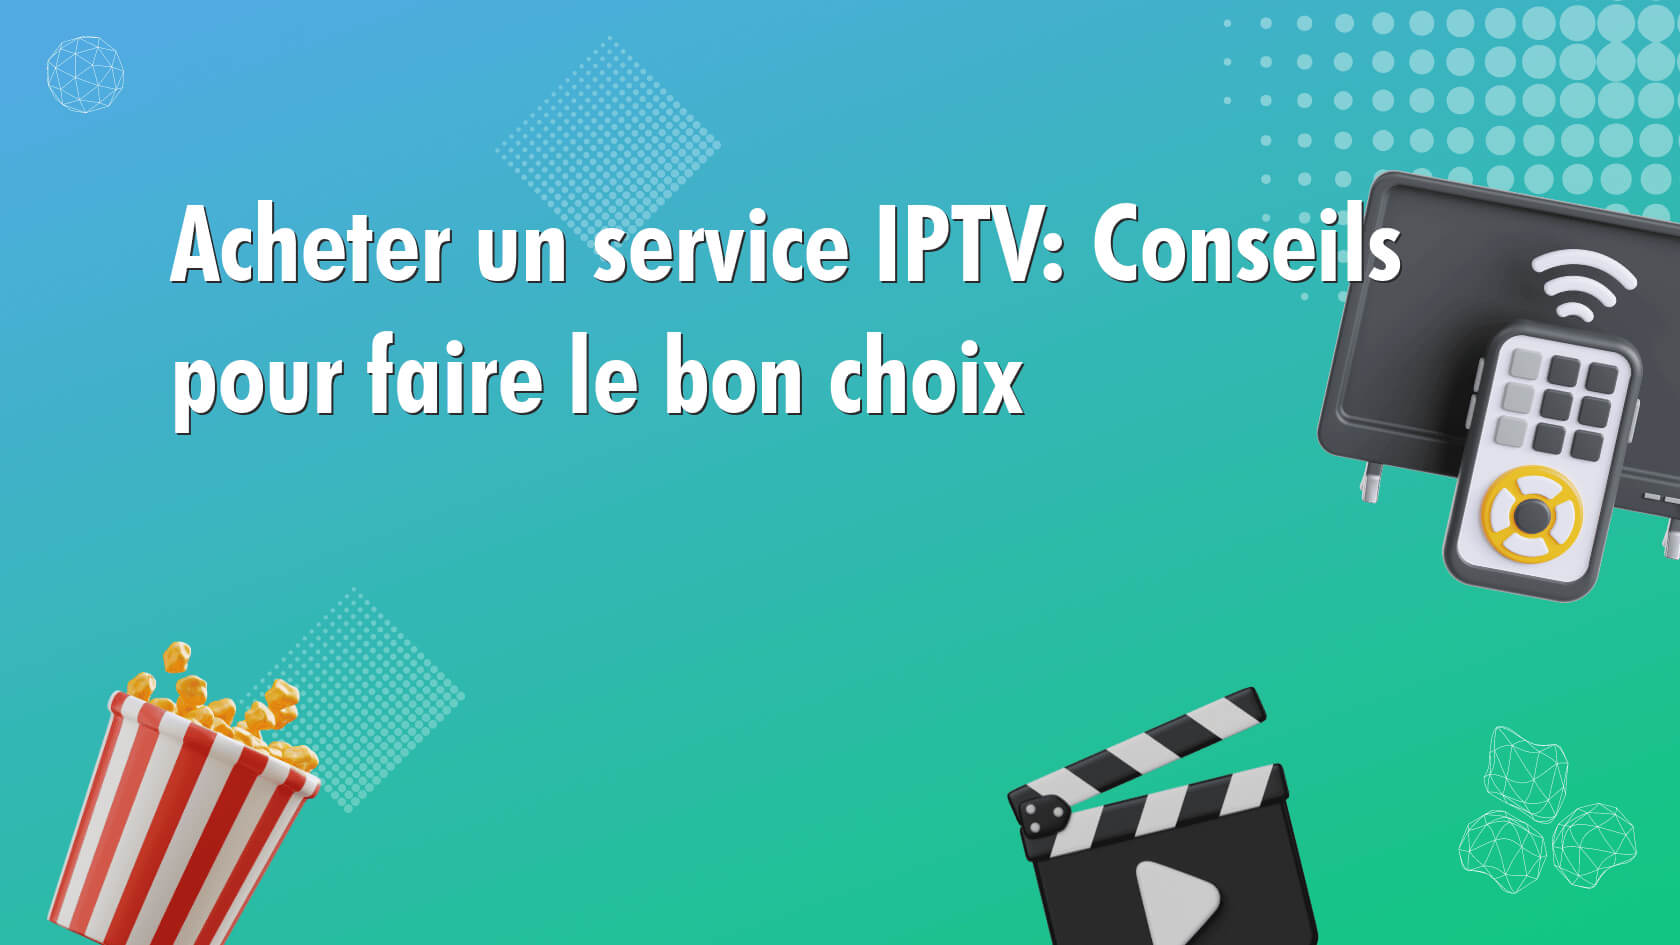 Acheter un service IPTV: Conseils pour faire le bon choix